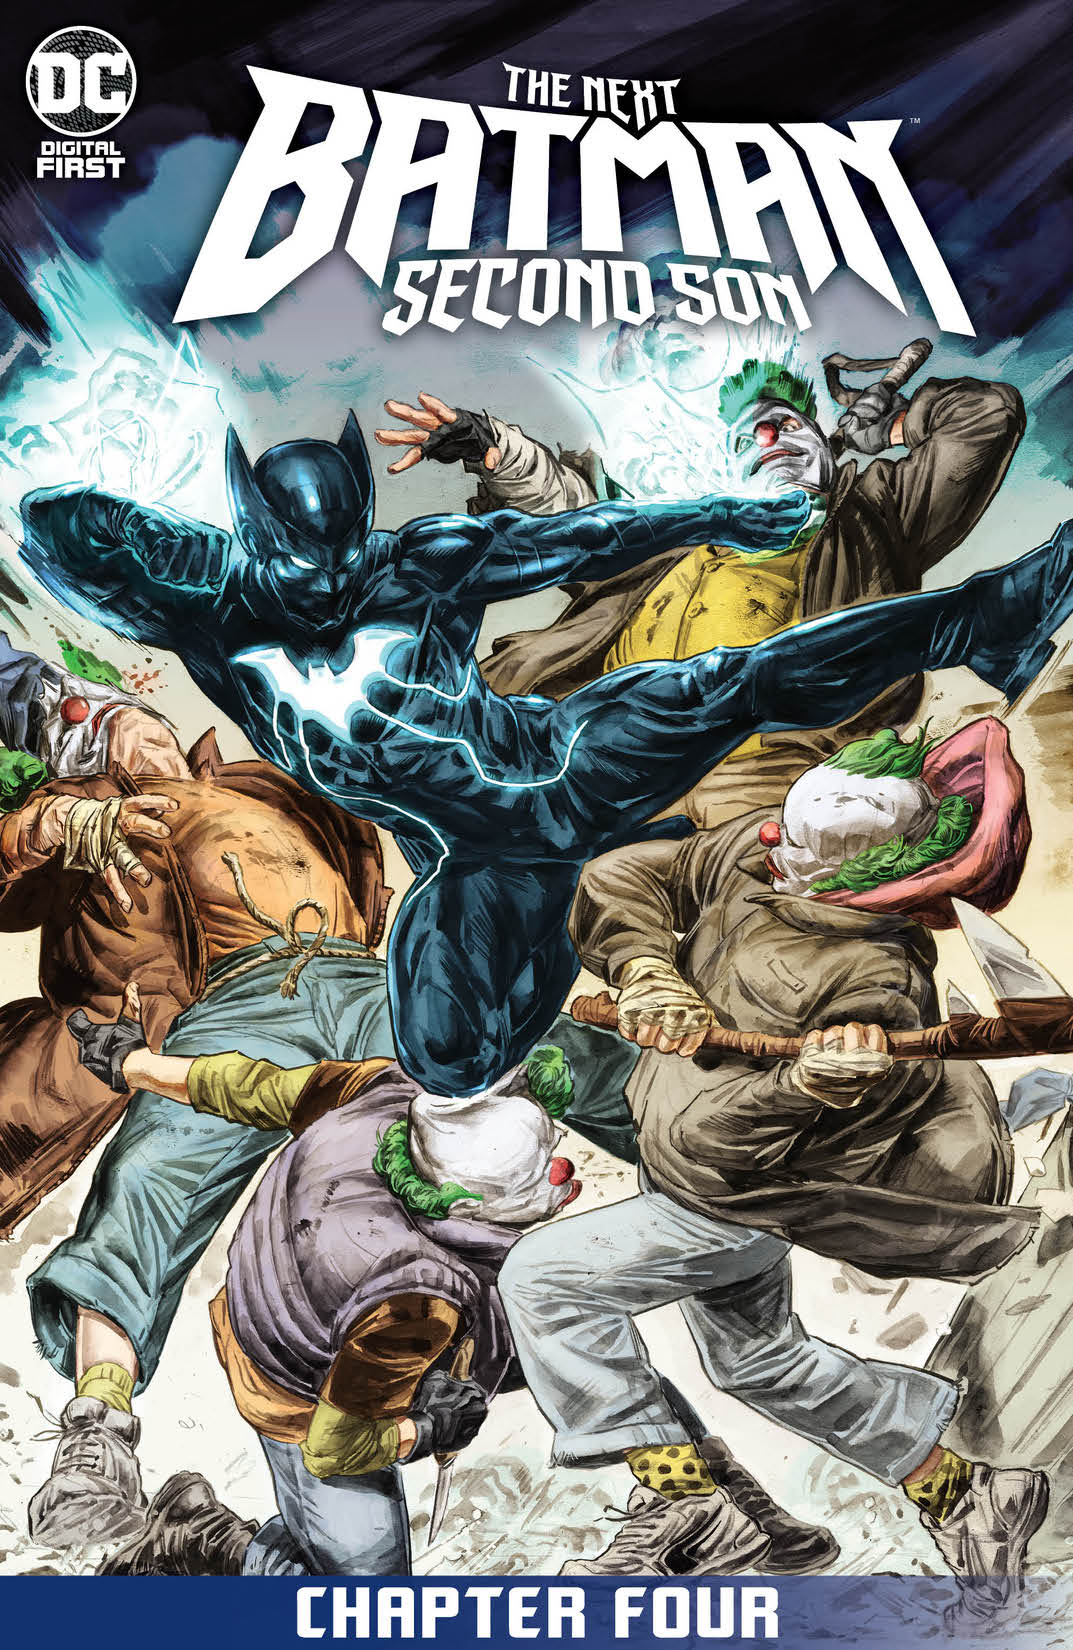 The Next Batman: Second Son #4 preview images